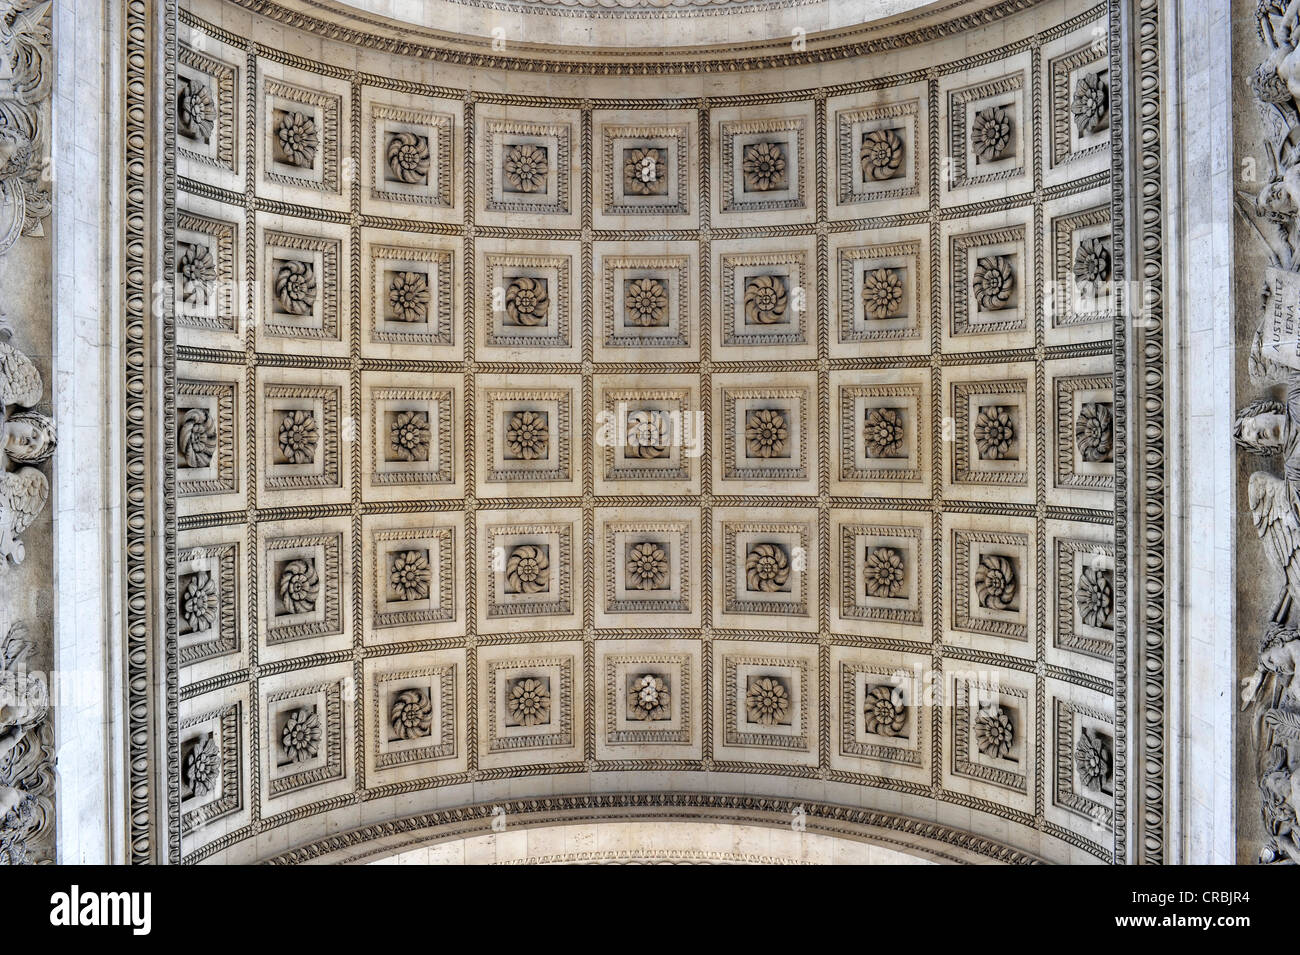 Vue perspective de la grenouille de reliefs muraux avec des noms et des inscriptions, l'Arc de Triomphe, Place Charles-de-Gaulle, axe historique Banque D'Images